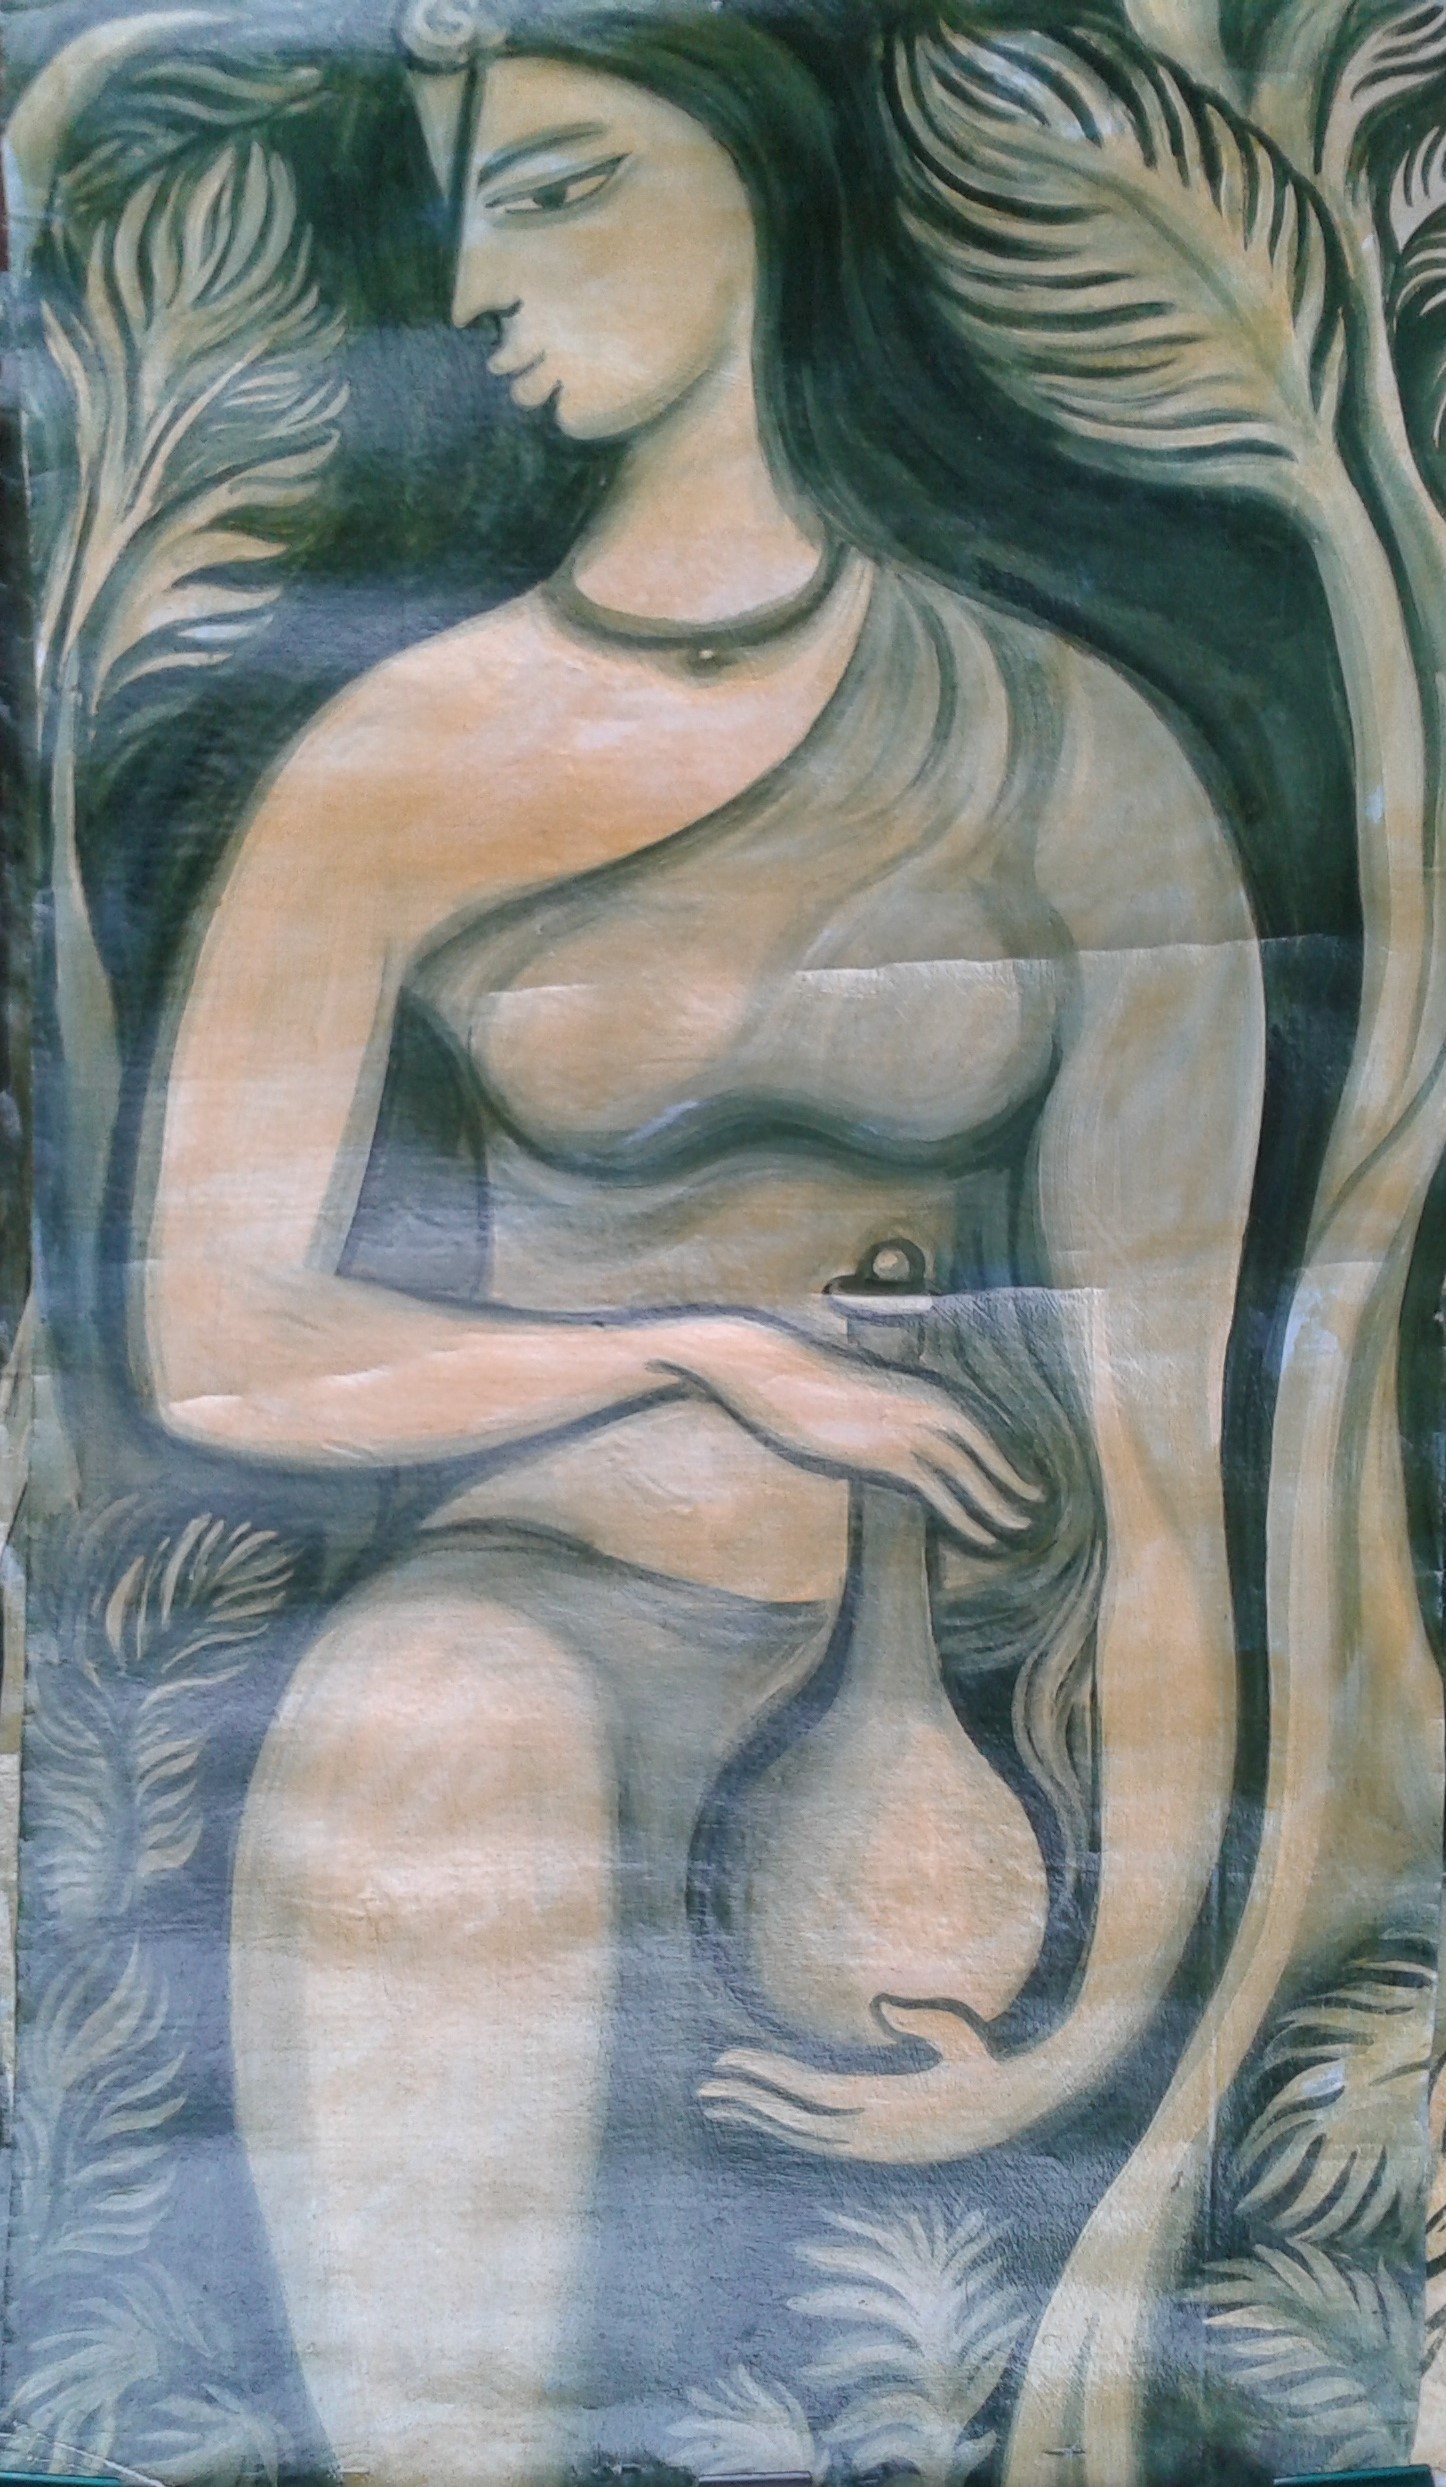 She by Wasantha Namaskara